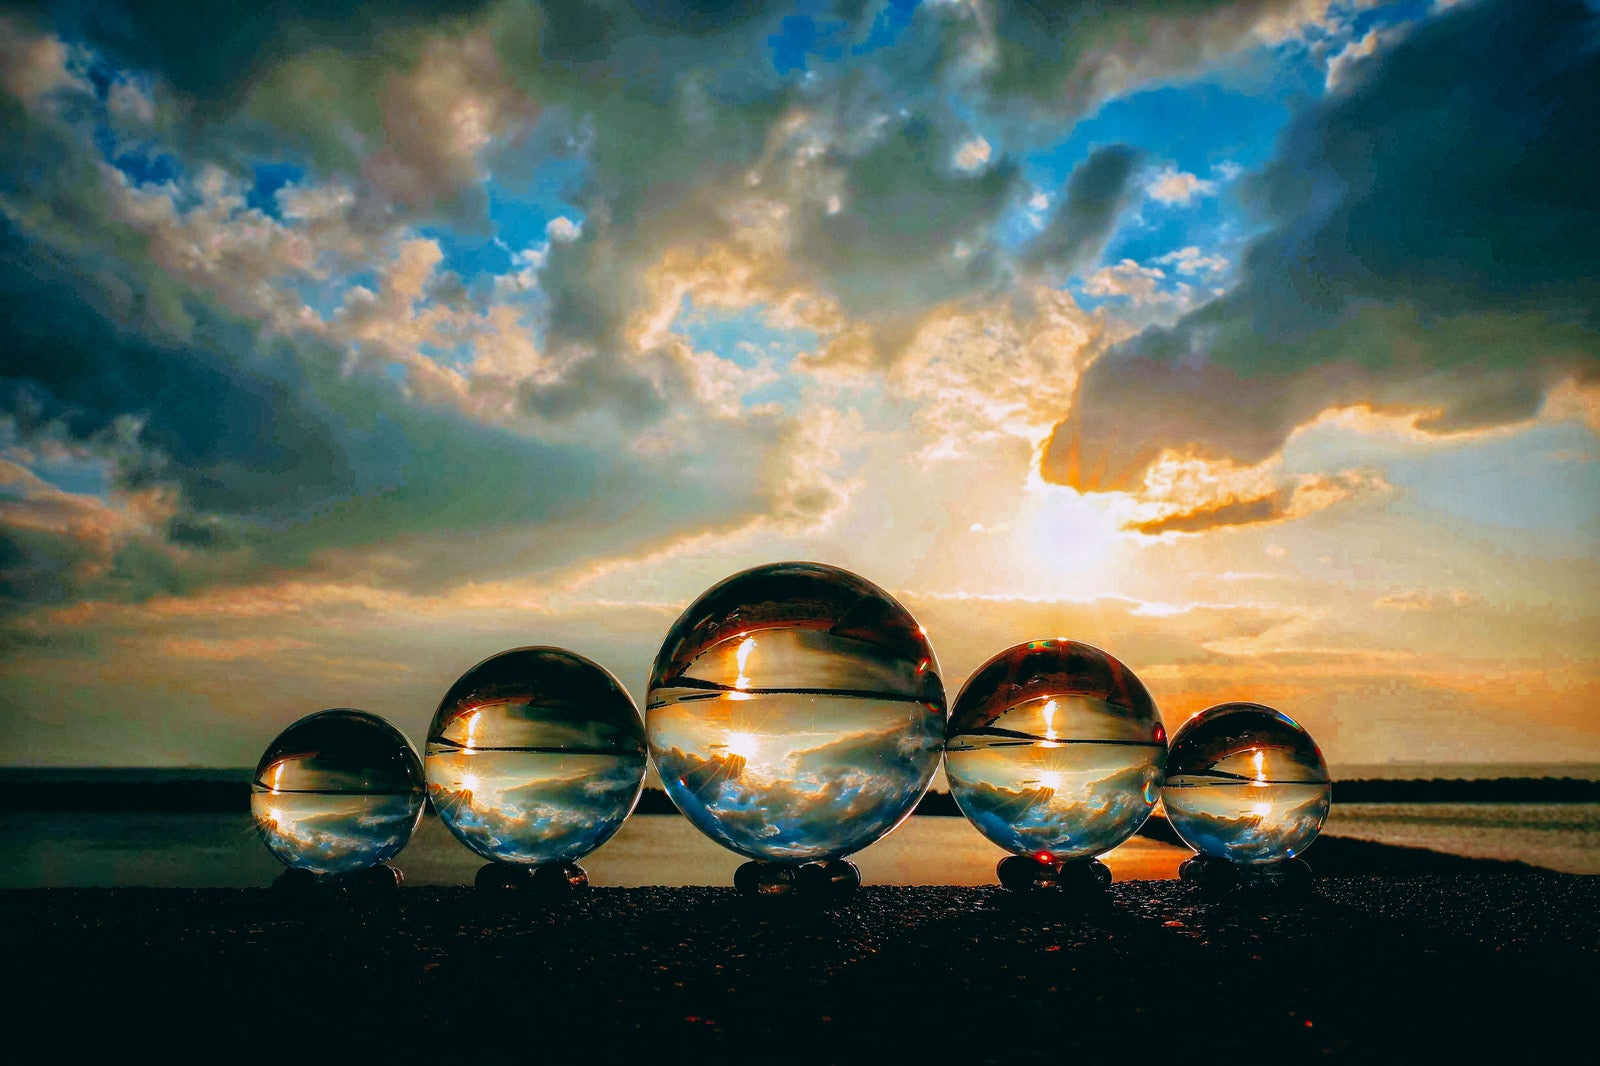 「並んだ水晶玉と夕焼け空」の写真